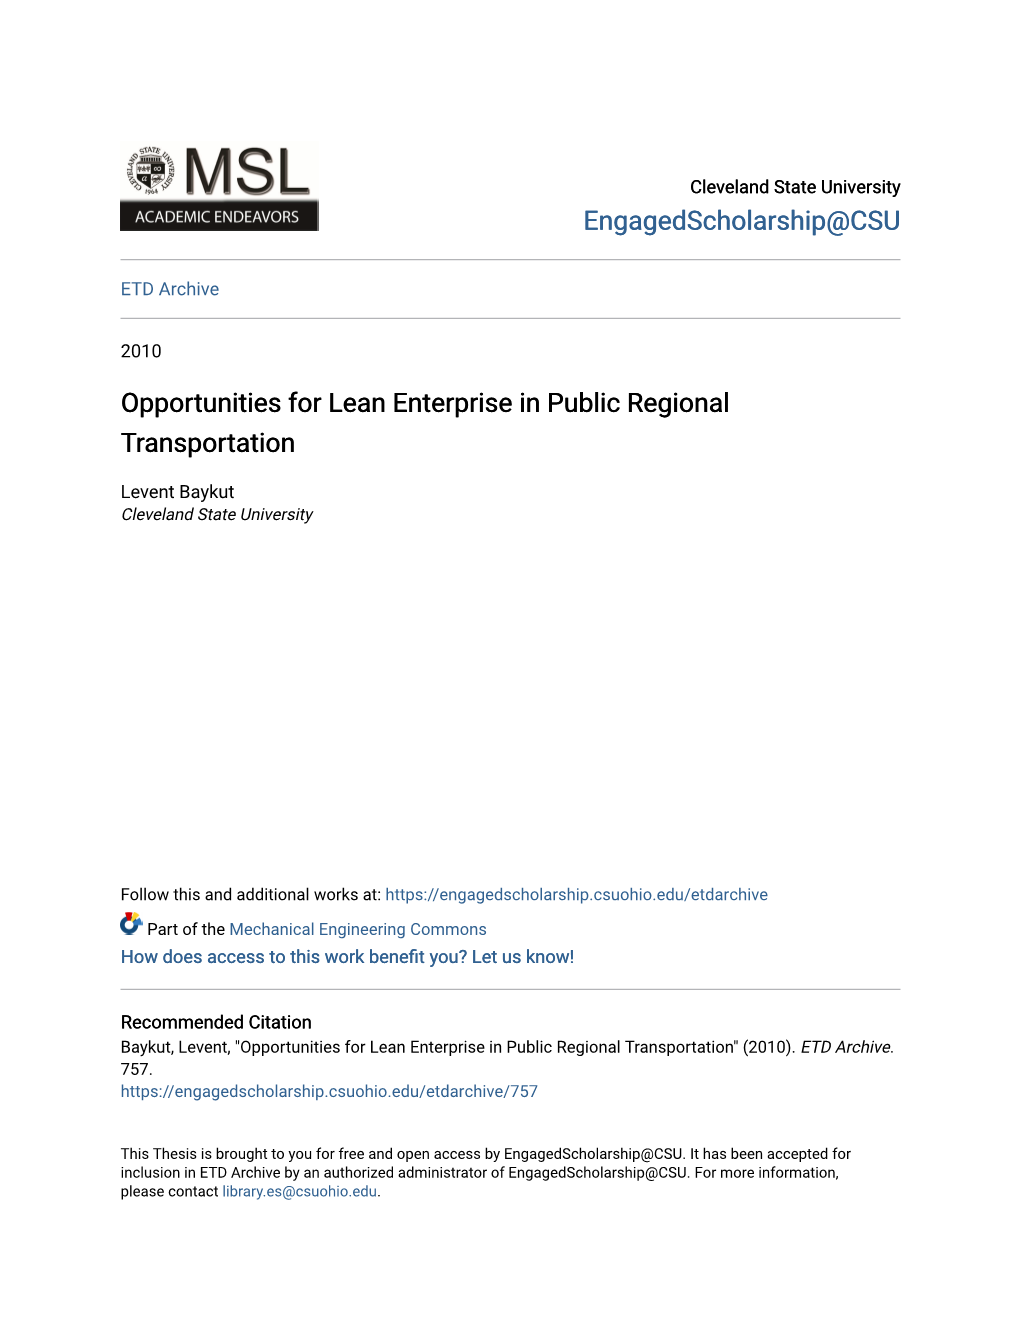 Opportunities for Lean Enterprise in Public Regional Transportation